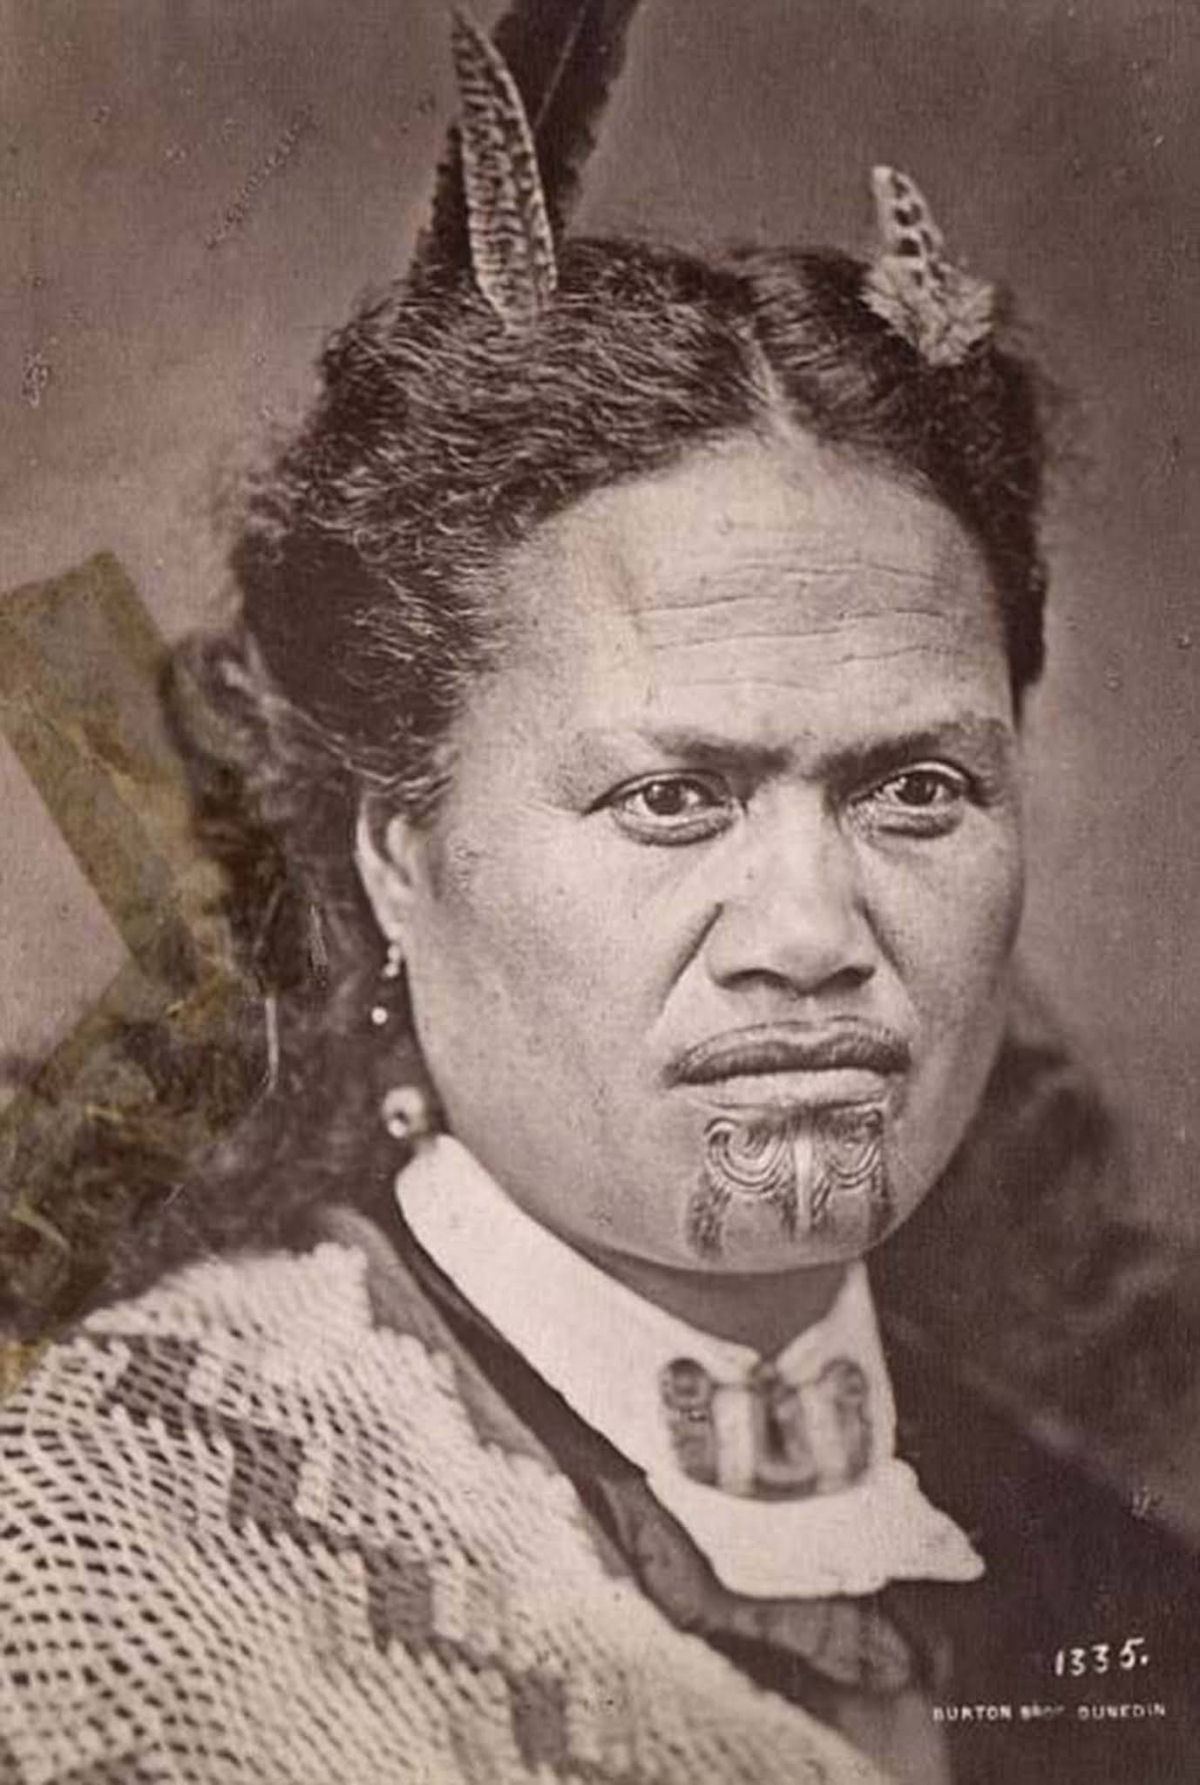 Antigas fotos de Maoris antes das tatuagens tā moko serem proibidas pelos britânicos 36